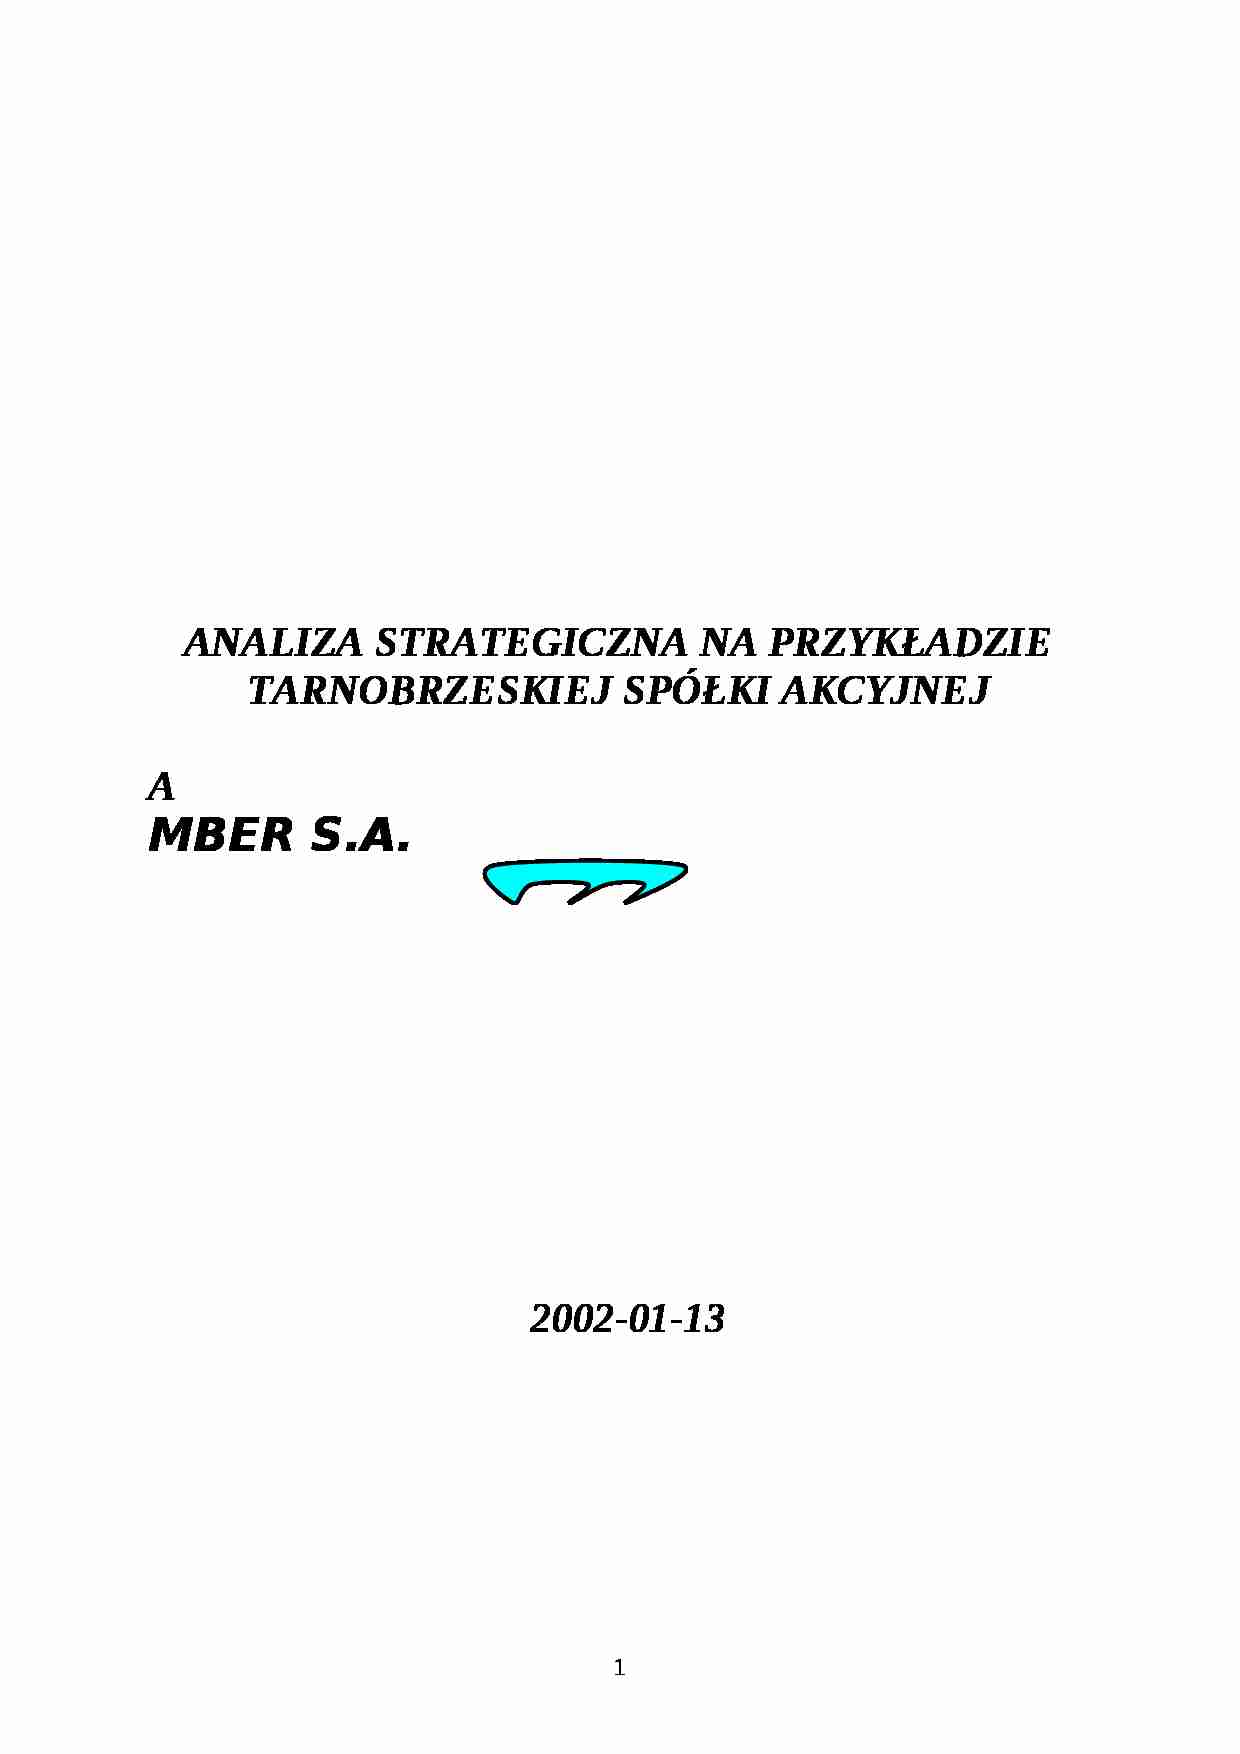 Analiza strategiczna - spólka akcyjna - strona 1